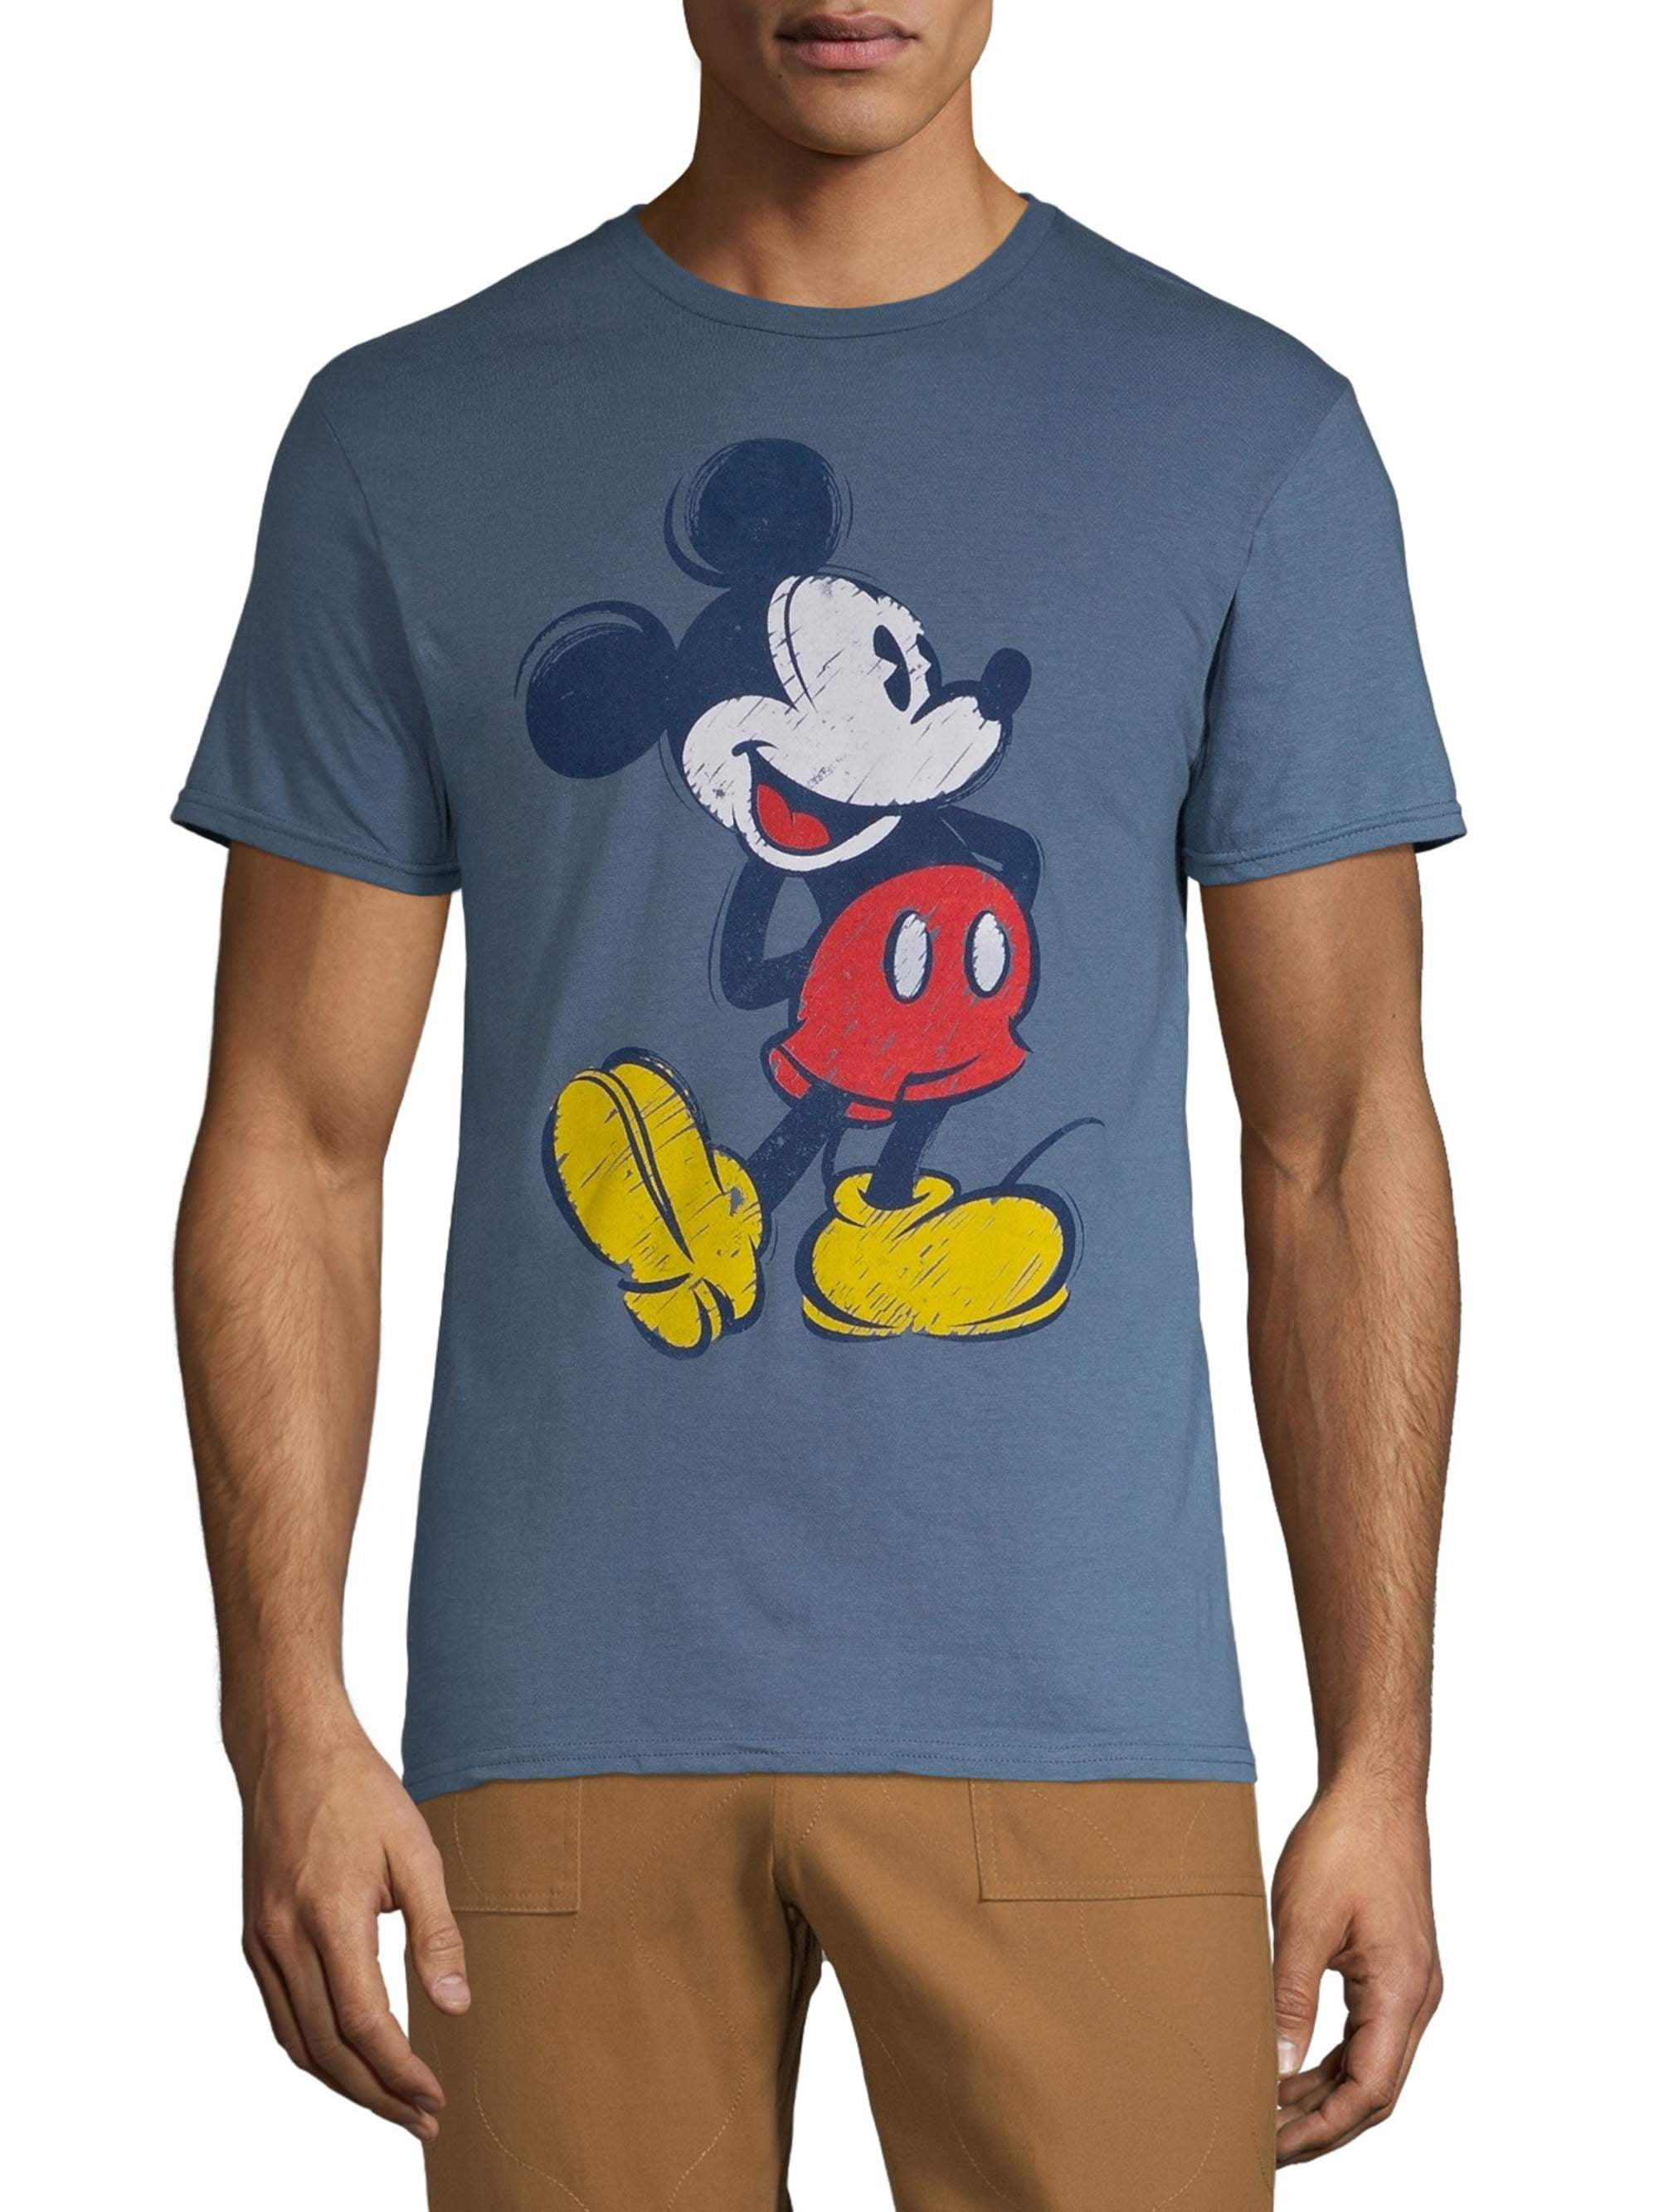 Walt Disney Shirt Walt And Mickey T-shirt Disney Gift Mickey Shirt Disney Shirts Disney Shirt Family Disney World Tee Walt Disney Tee